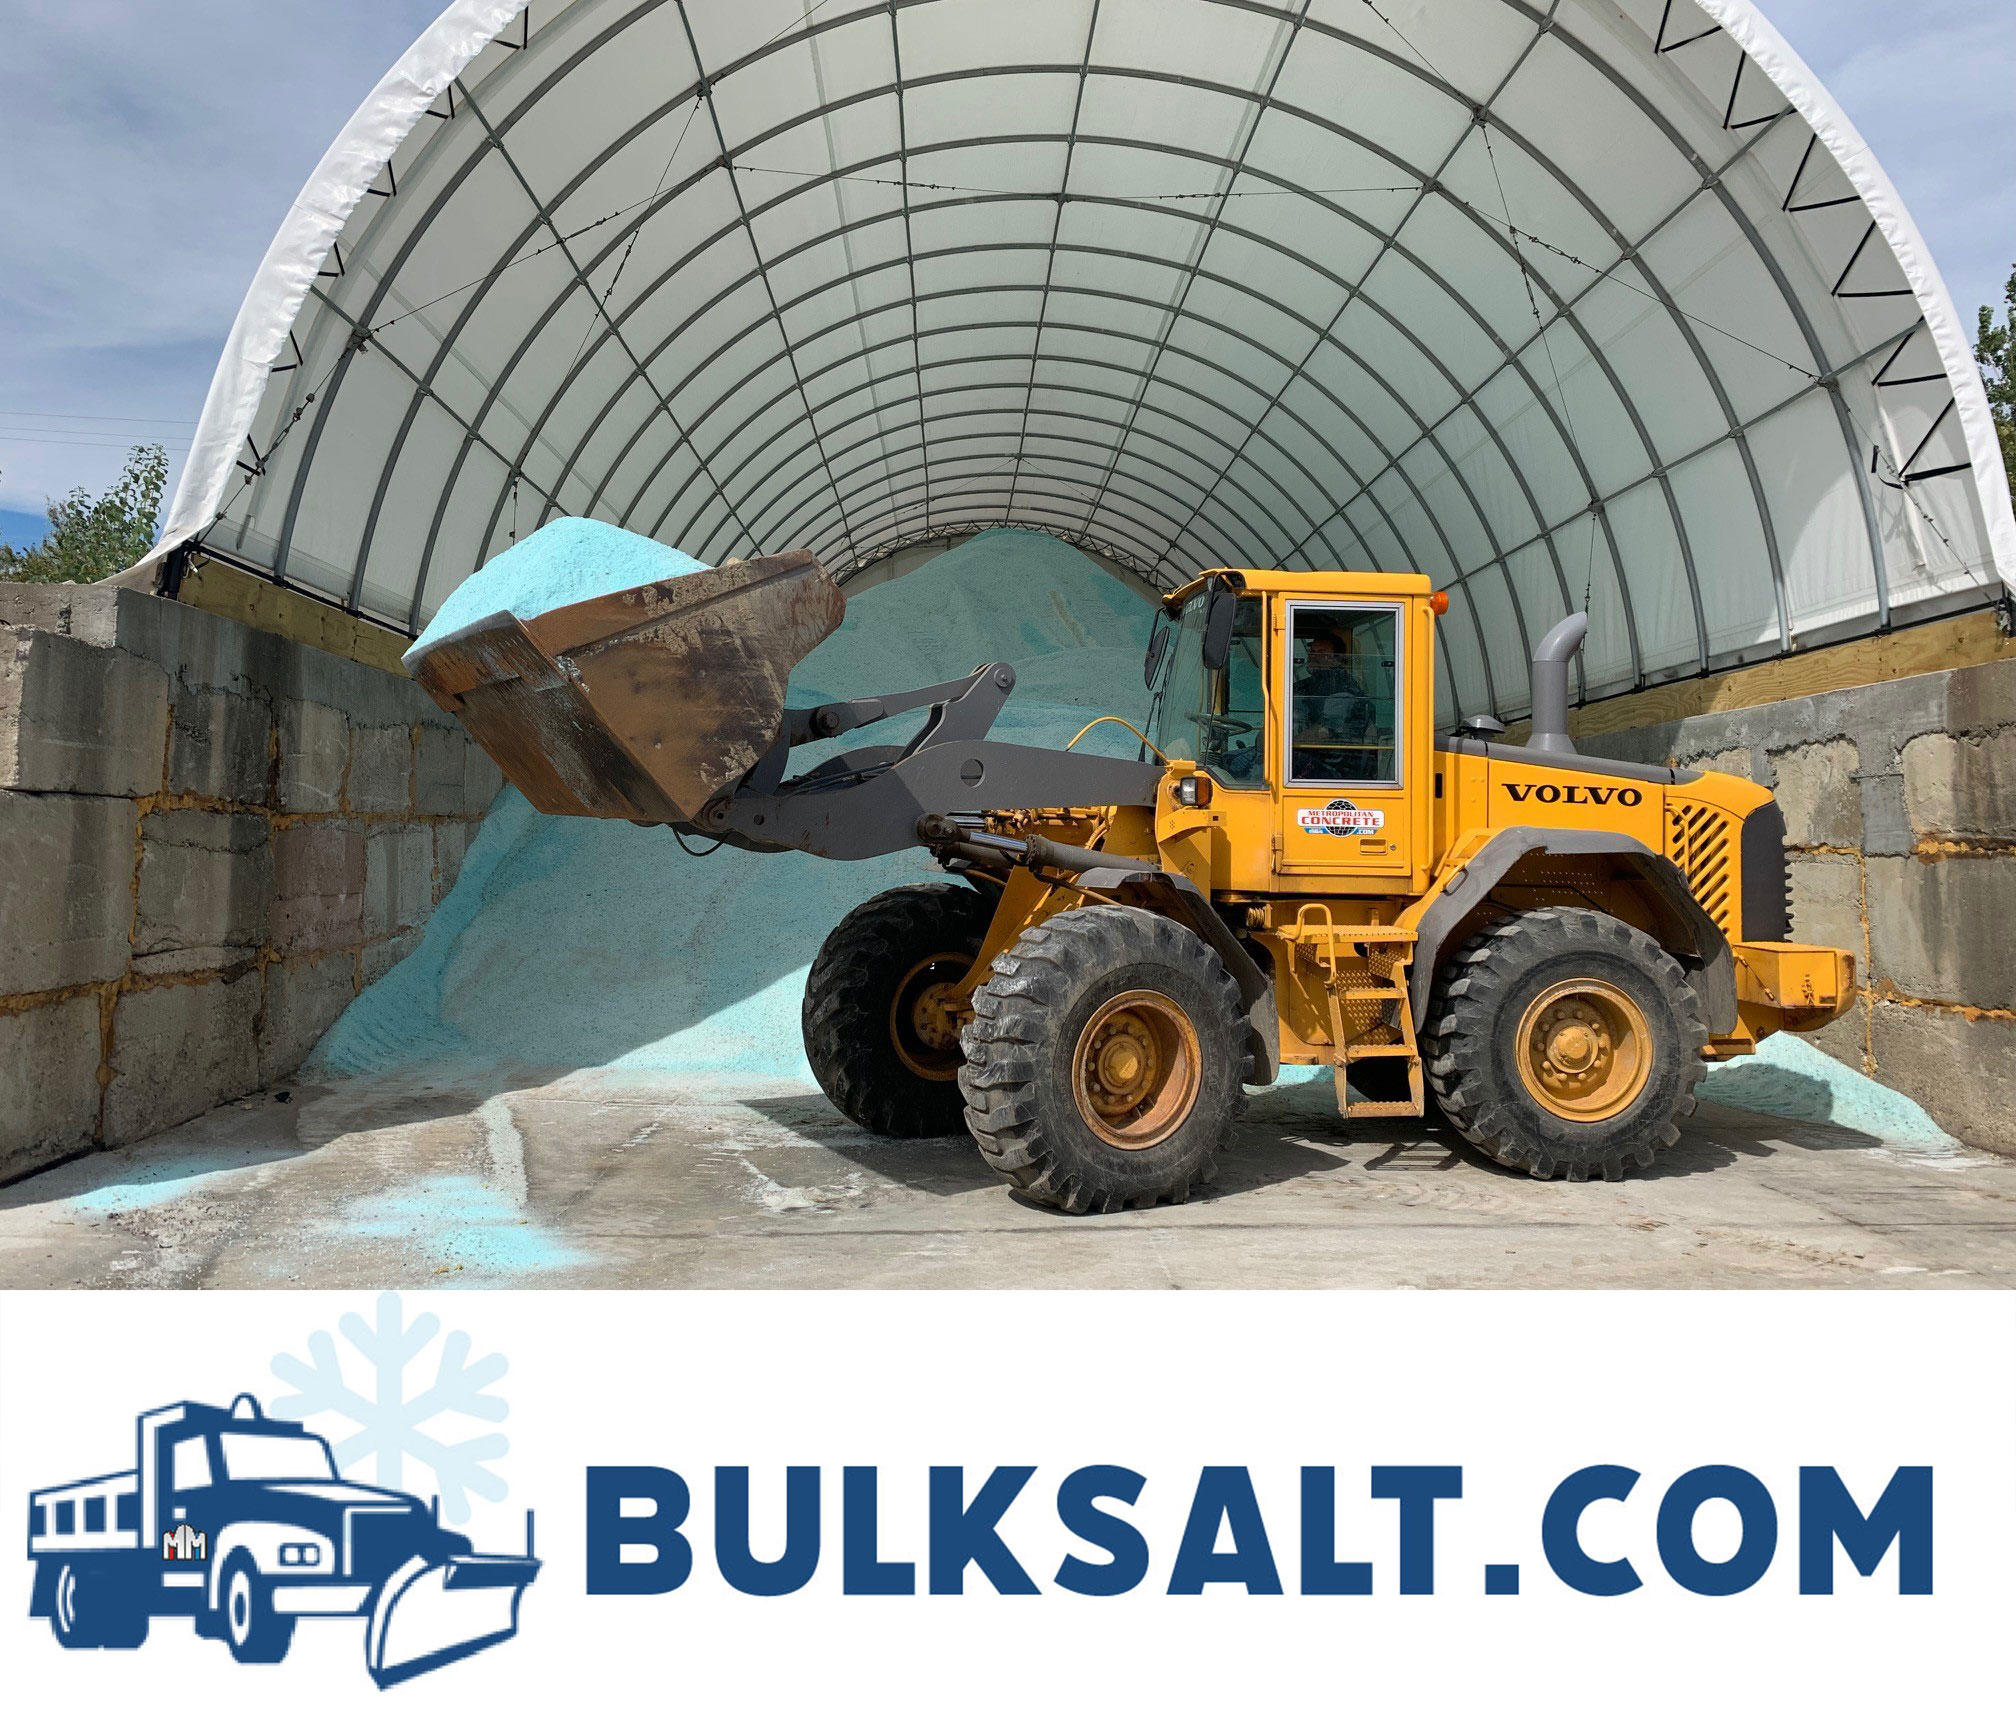 Small Bulldozer moving Salt for BulkSalt.com